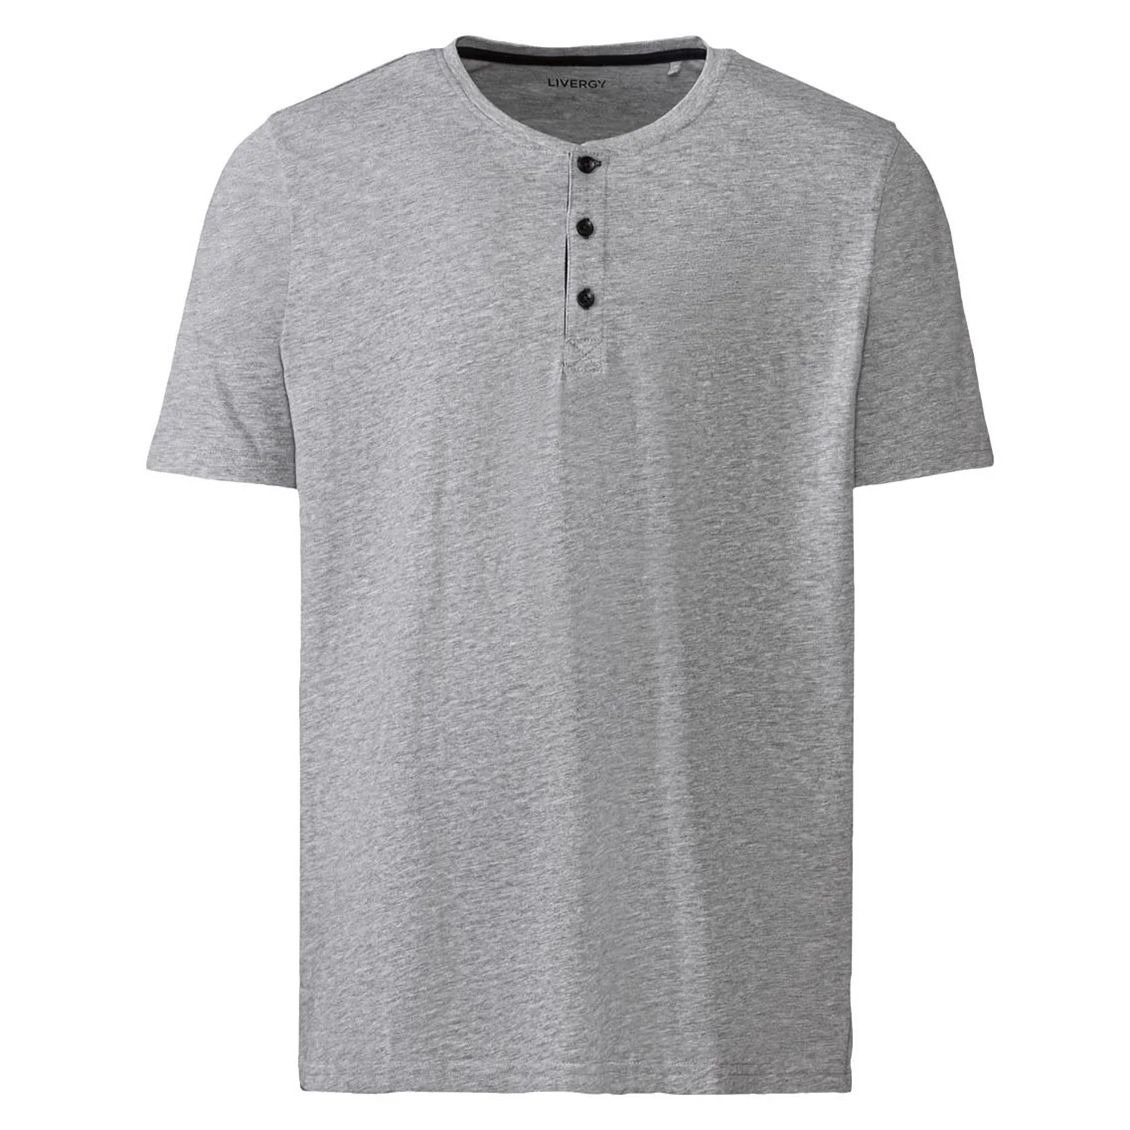 تی شرت آستین کوتاه مردانه لیورجی مدل 10569531